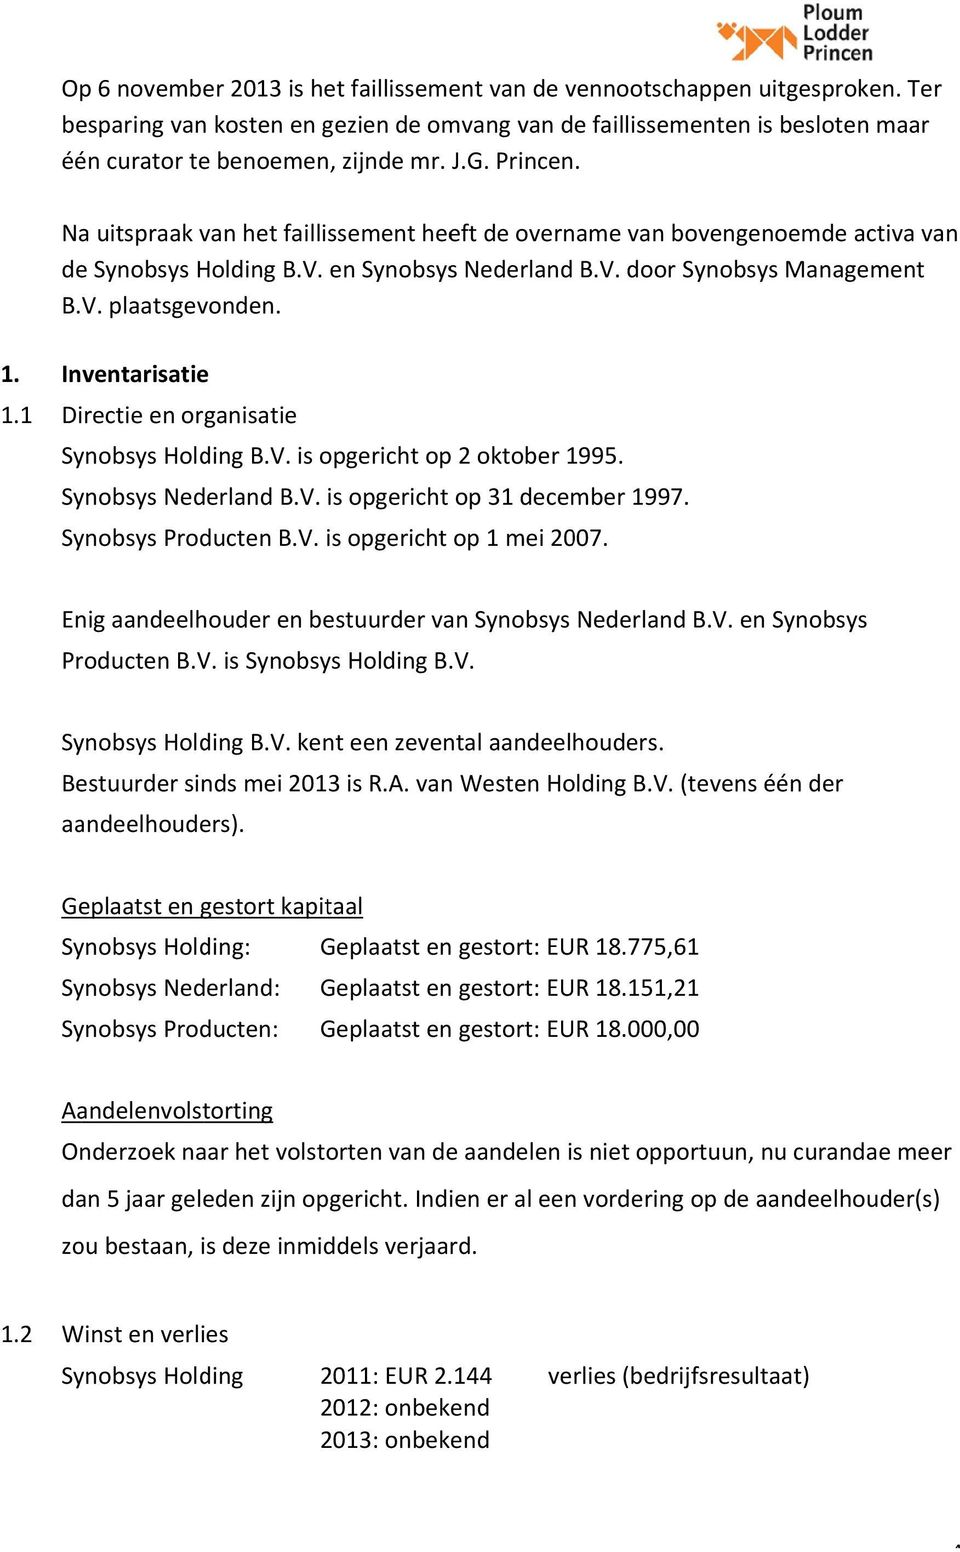 Inventarisatiee 1.1 Directie en organisatie Synobsys Holding B.V. is opgericht op 2 oktober 1995. Synobsys Nederland B.V. is opgericht op 31 december 1997. Synobsys Producten B.V. is opgericht op 1 mei 2007.